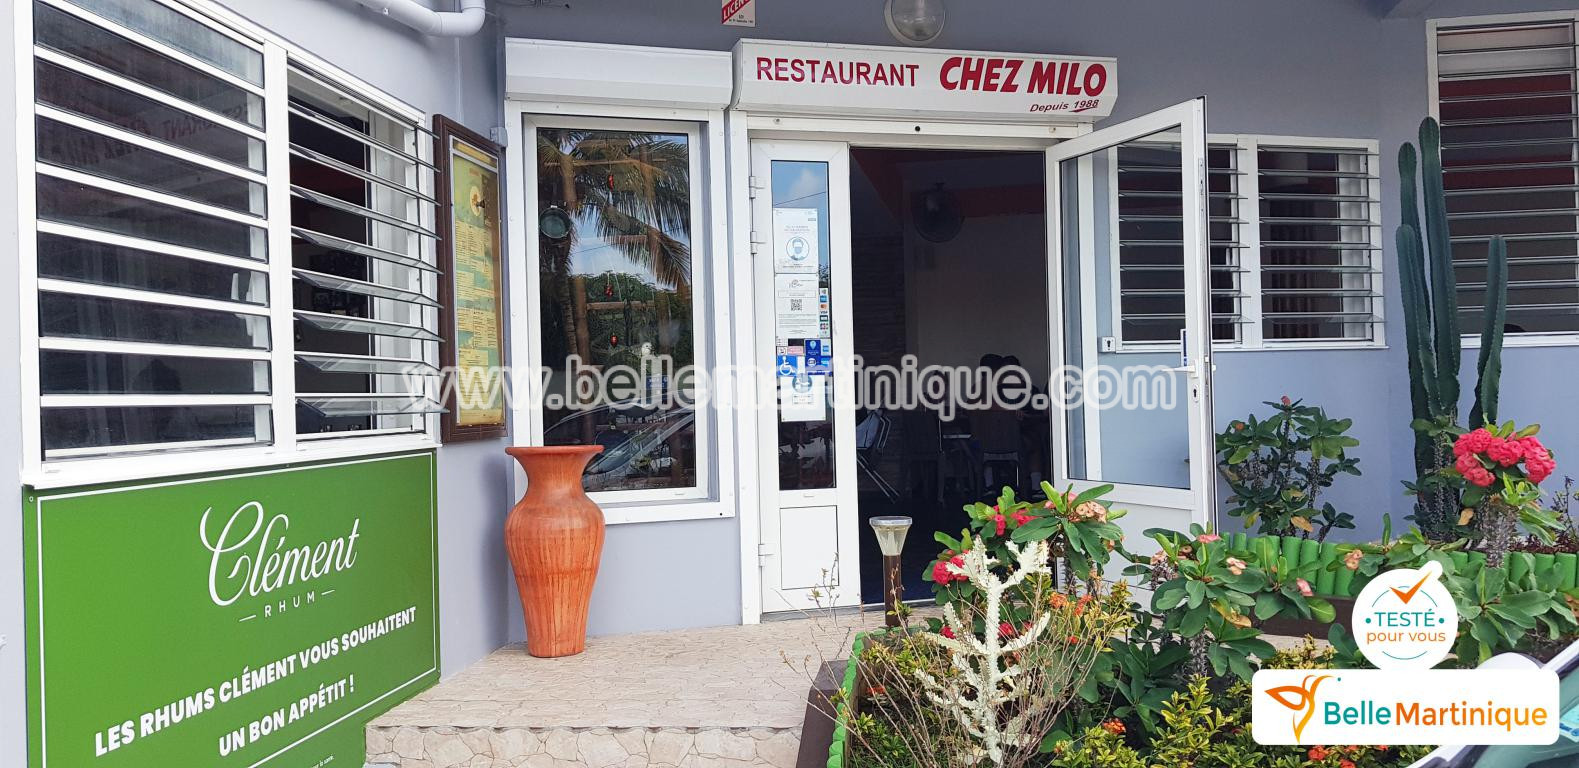 mini_Restaurant Chez Milo - cuisine creole - le francois - martinique - antilles - caraibe 14